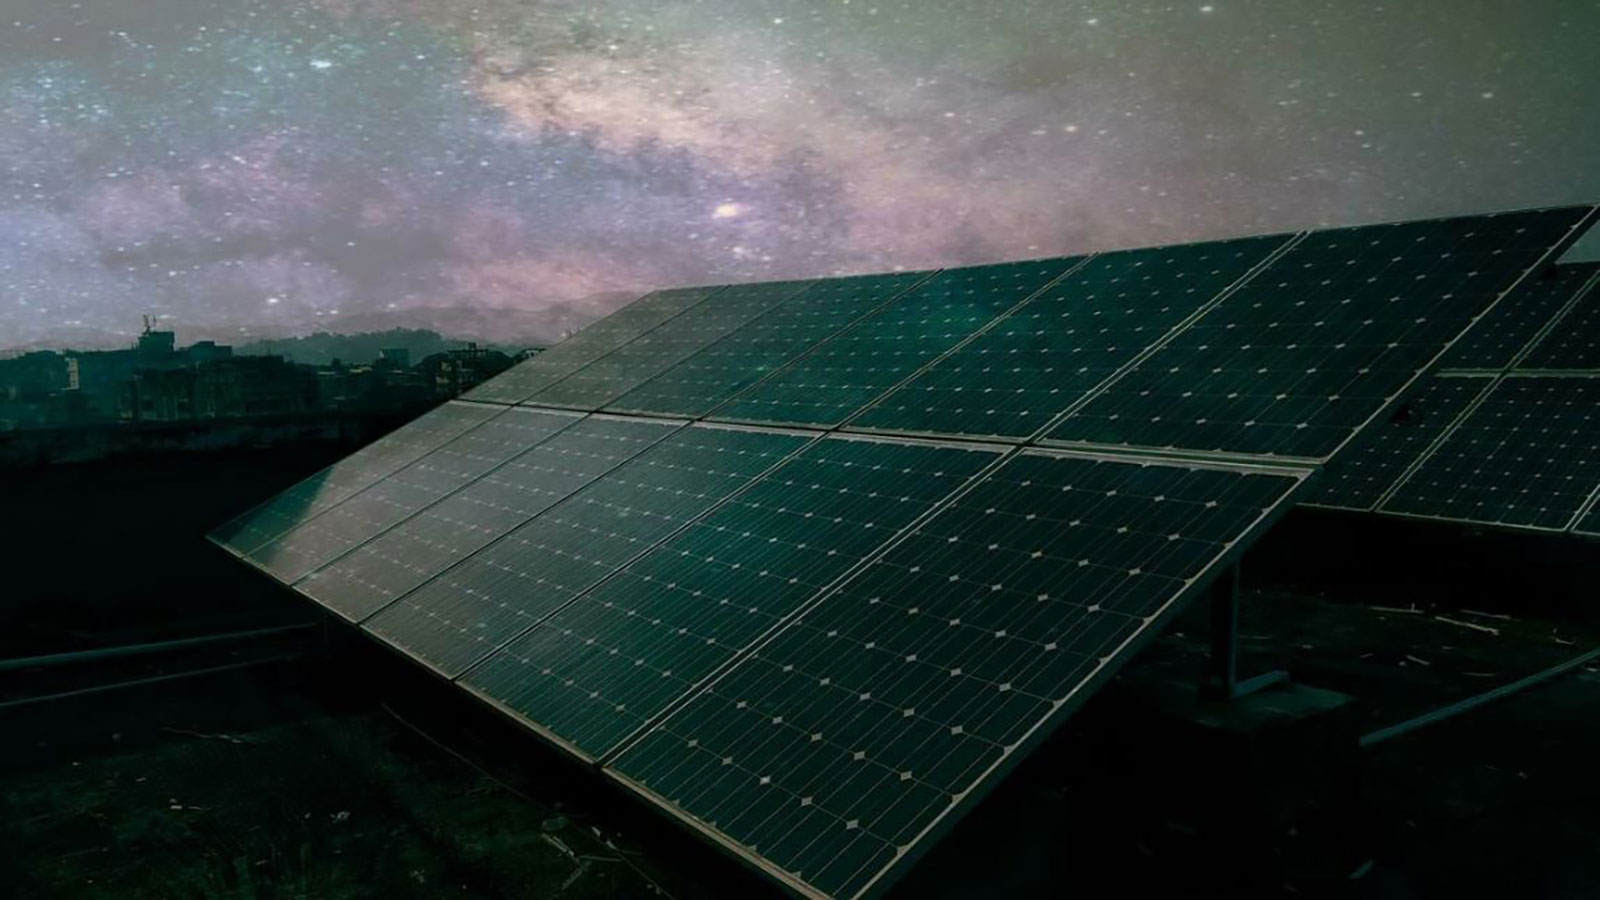  تكنولوجيا جديدة.. ألواح للطاقة الشمسية تولد الكهرباء ليلاً